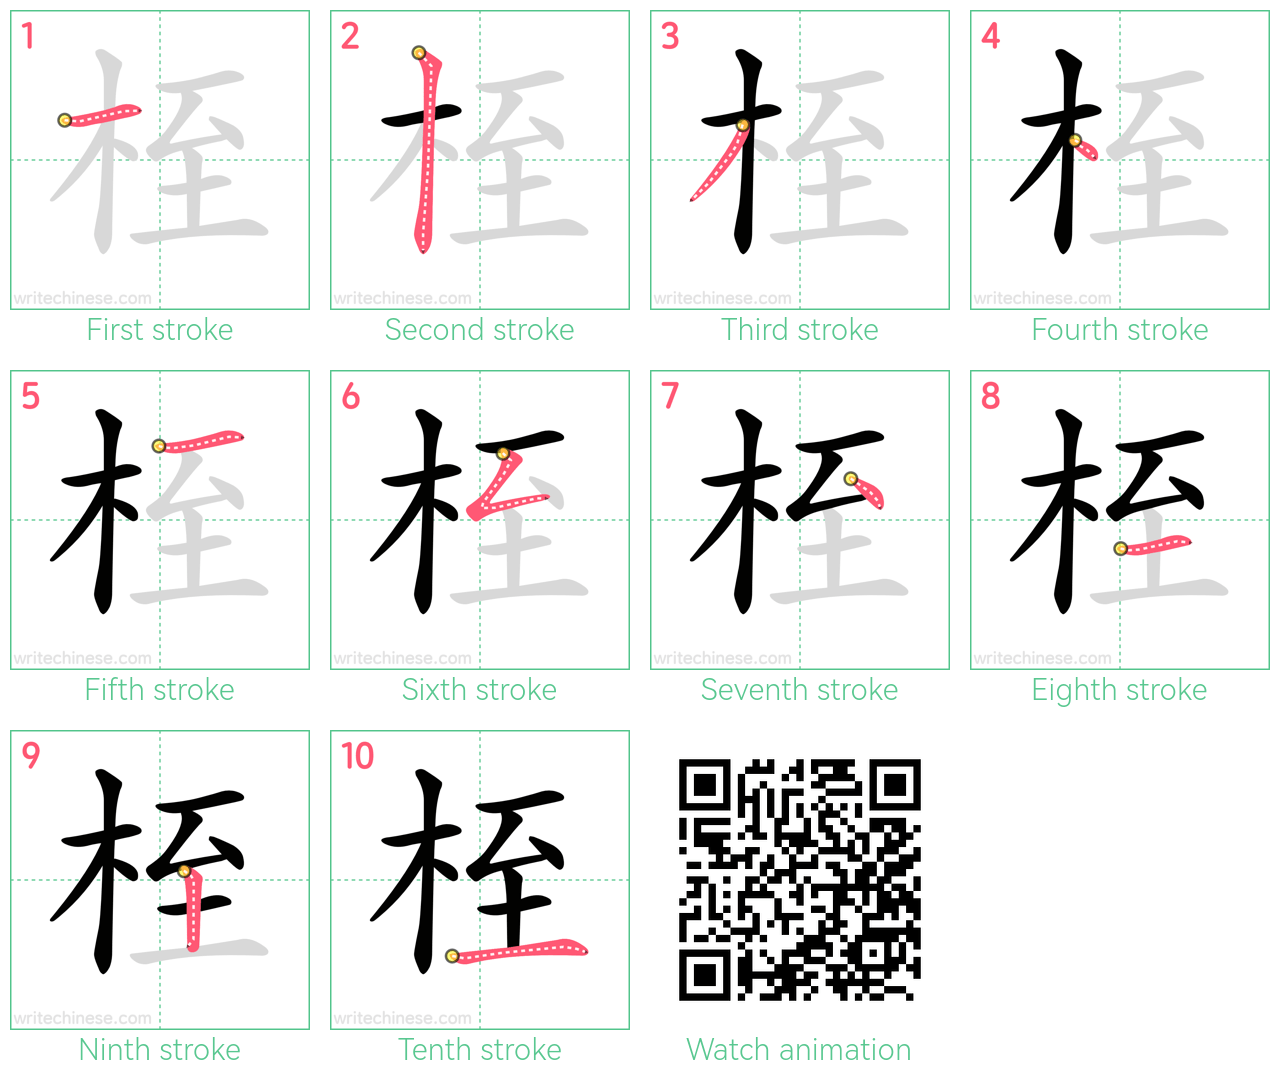 桎 step-by-step stroke order diagrams